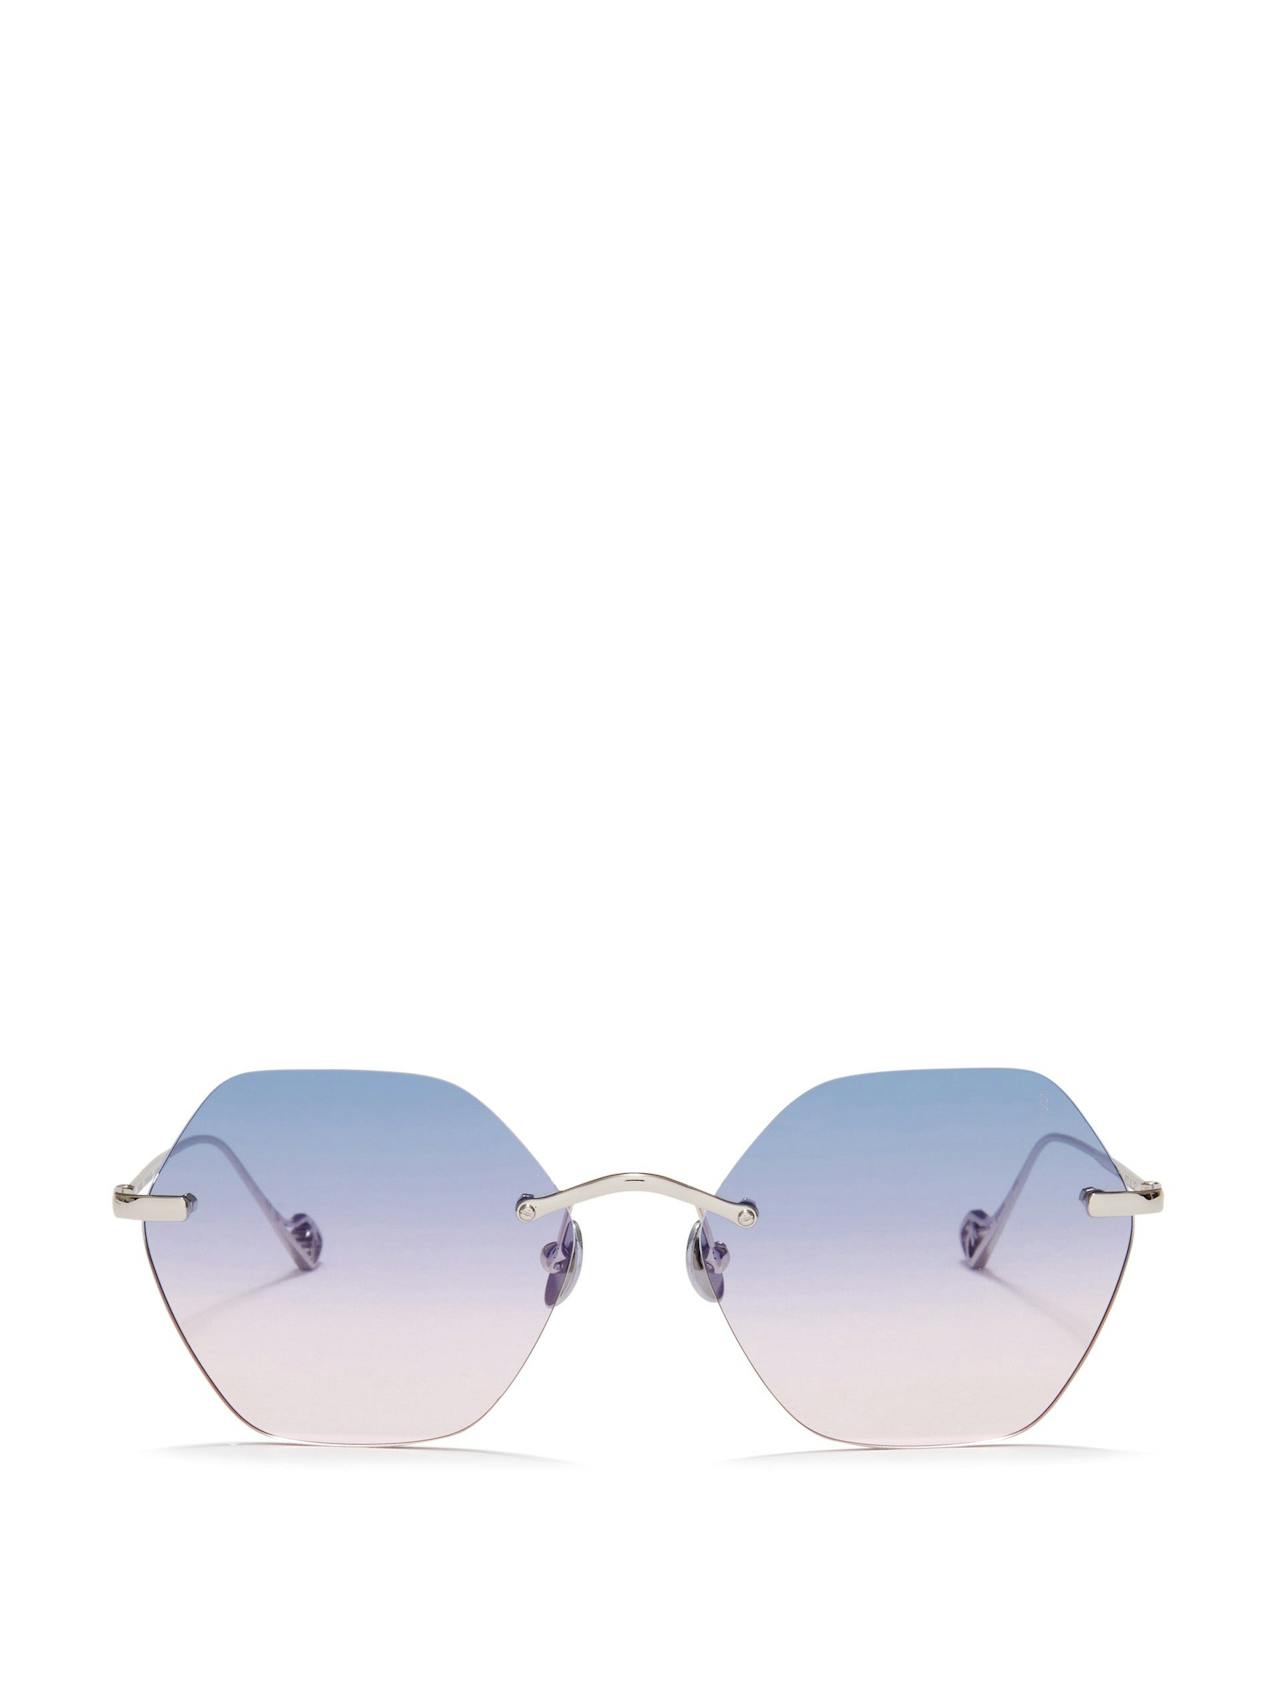 Silver Newport sunglasses